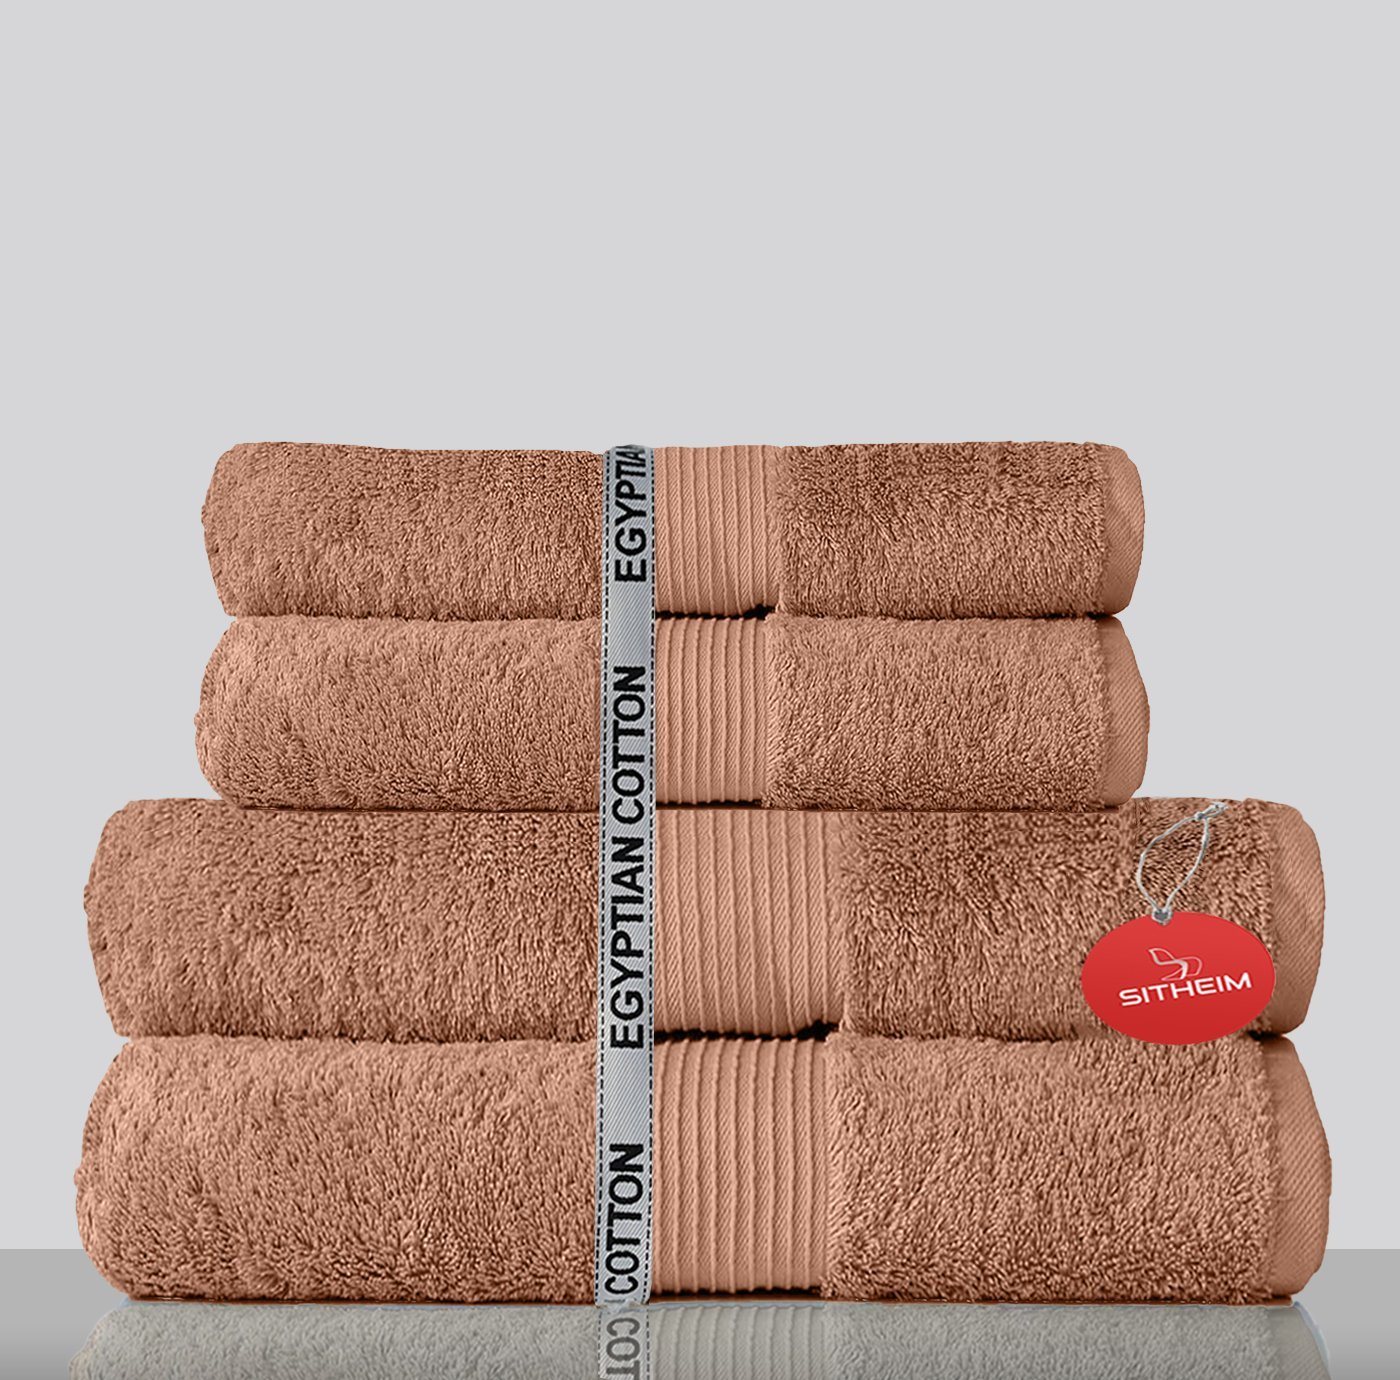 Sitheim-Europe Handtuch Set GIZA LINE Handtücher aus 100% ägyptischer Baumwolle 4-teiliges Handtuchset, ägyptische Baumwolle, (Spar-Set, 4-tlg), 100% premium ägyptische Baumwolle von Sitheim-Europe